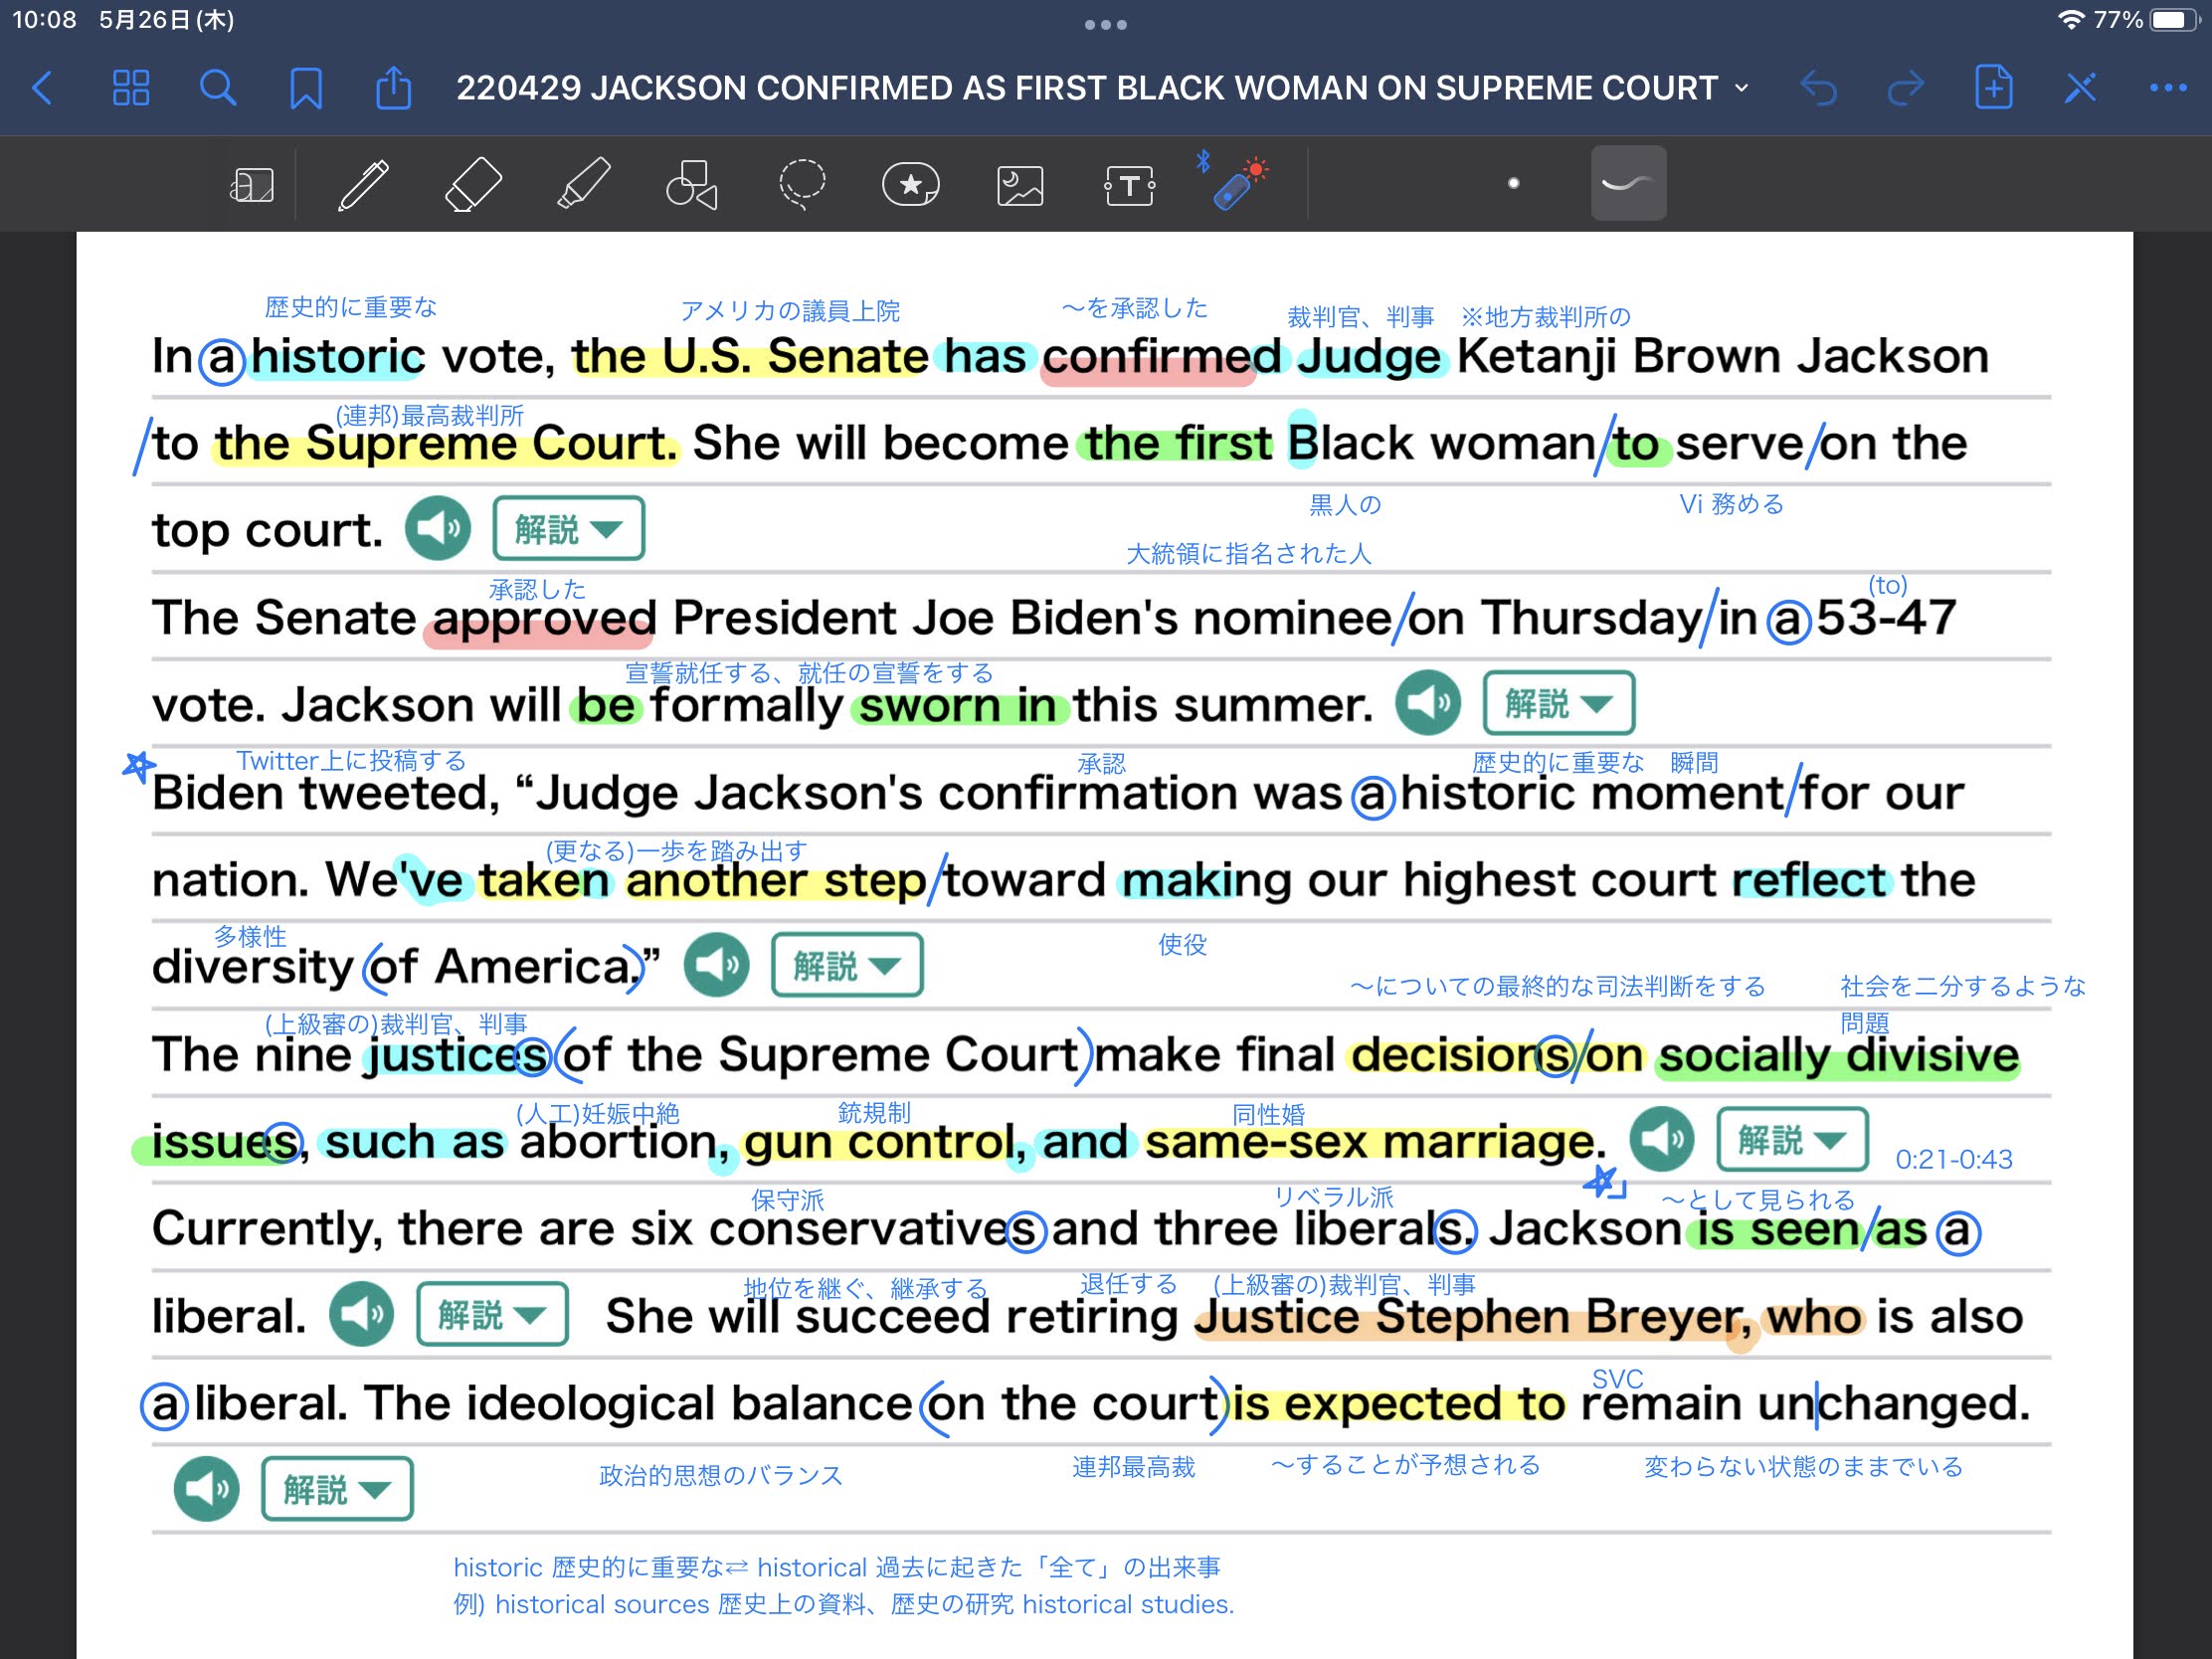 米連邦最高裁 初の黒人女性判事誕生へ　JACKSON CONFIRMED AS FIRST BLACK WOMAN ON SUPREME COURT